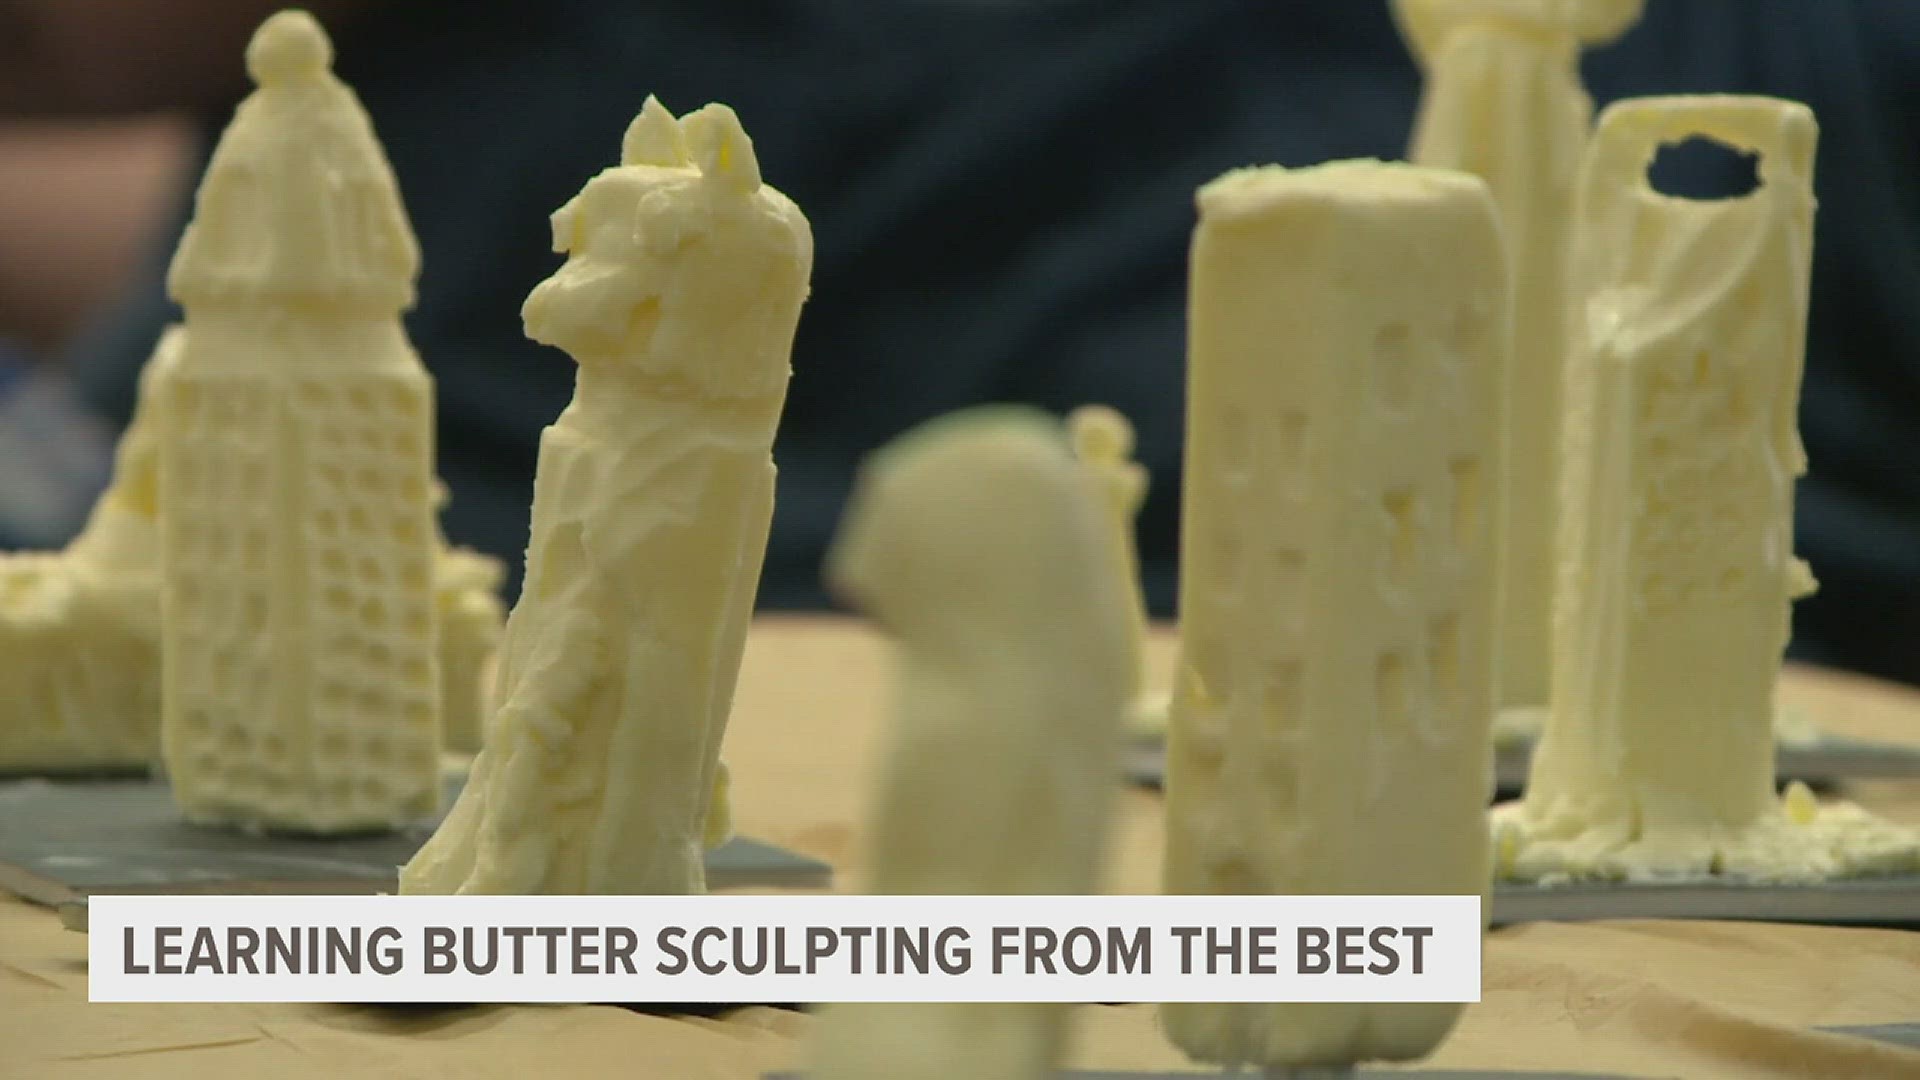 Iowa State Fair's butter sculptor shares butter skills